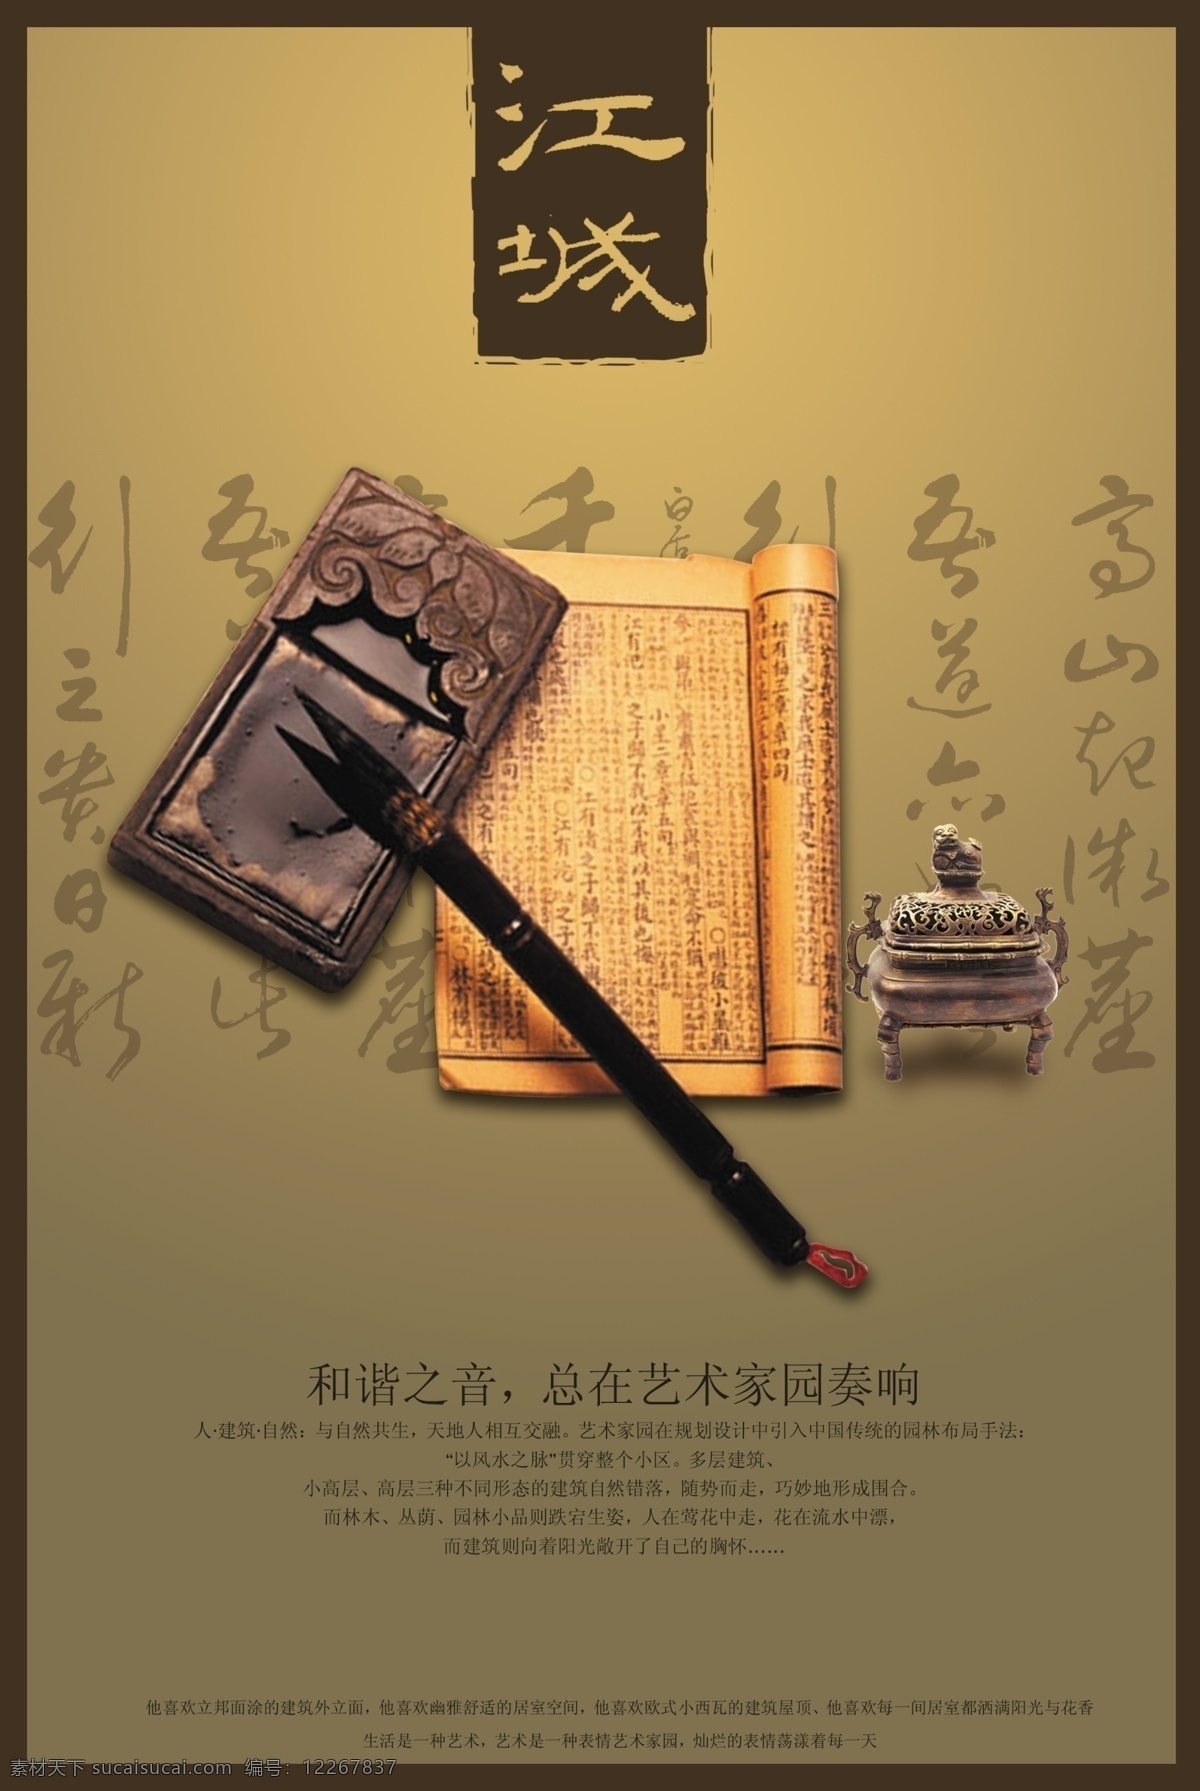 中国 风 古典 笔墨纸砚 文案 宣传海报 中国风